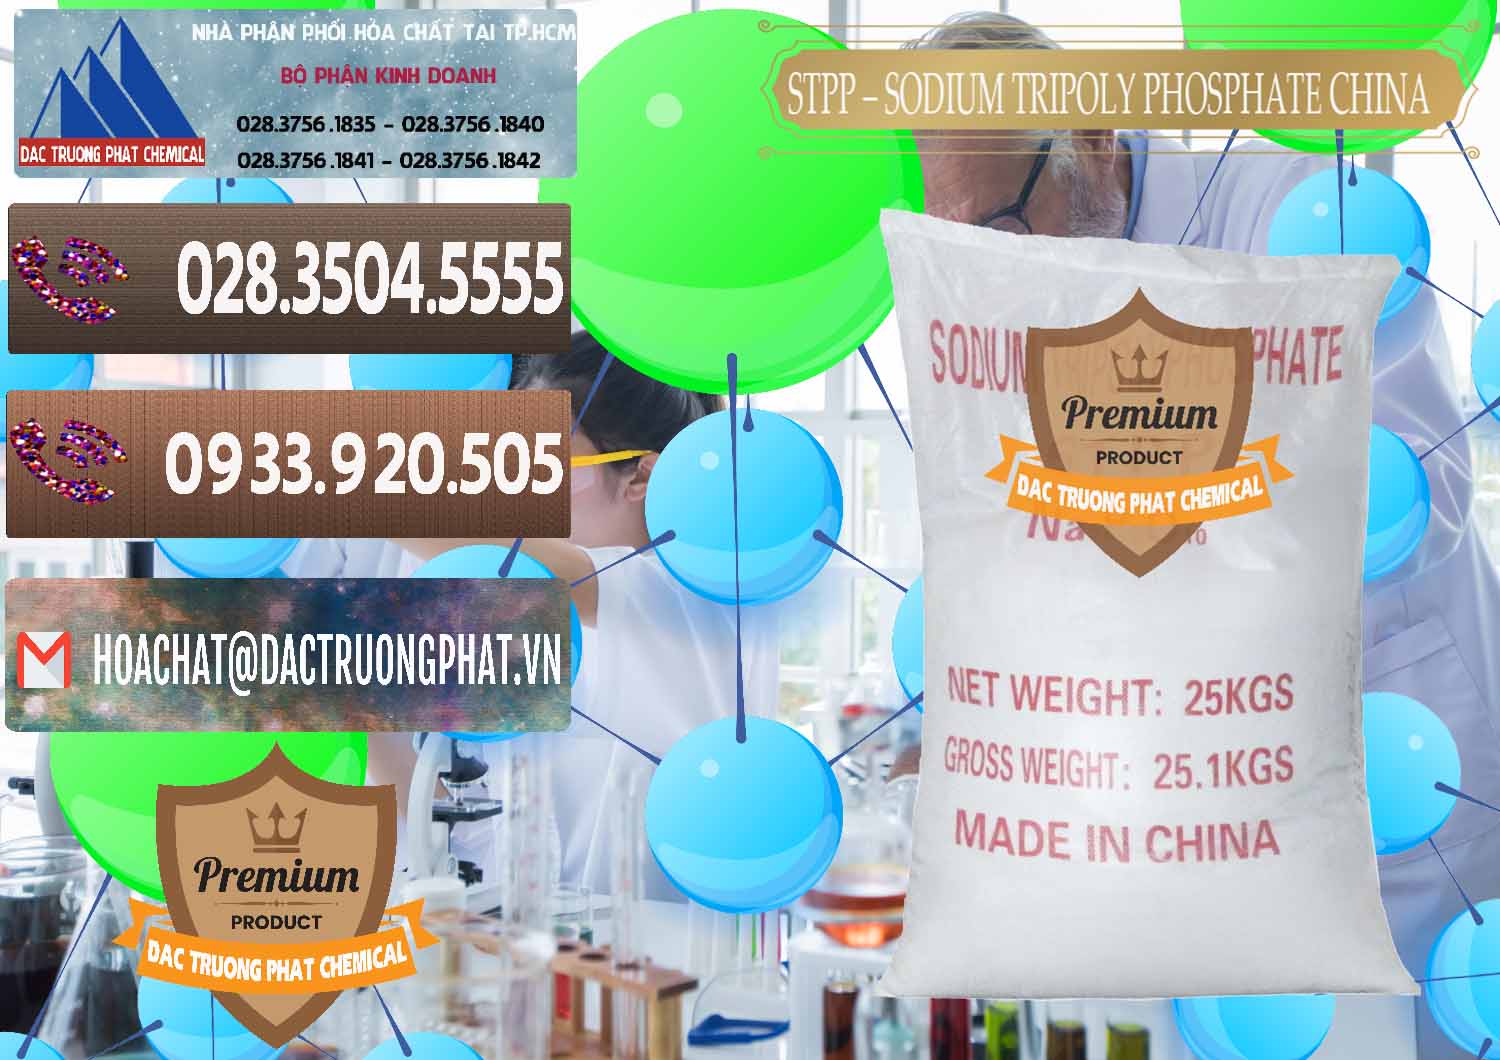 Công ty kinh doanh - bán Sodium Tripoly Phosphate - STPP 96% Chữ Đỏ Trung Quốc China - 0155 - Nơi cung cấp - bán hóa chất tại TP.HCM - hoachatviet.net